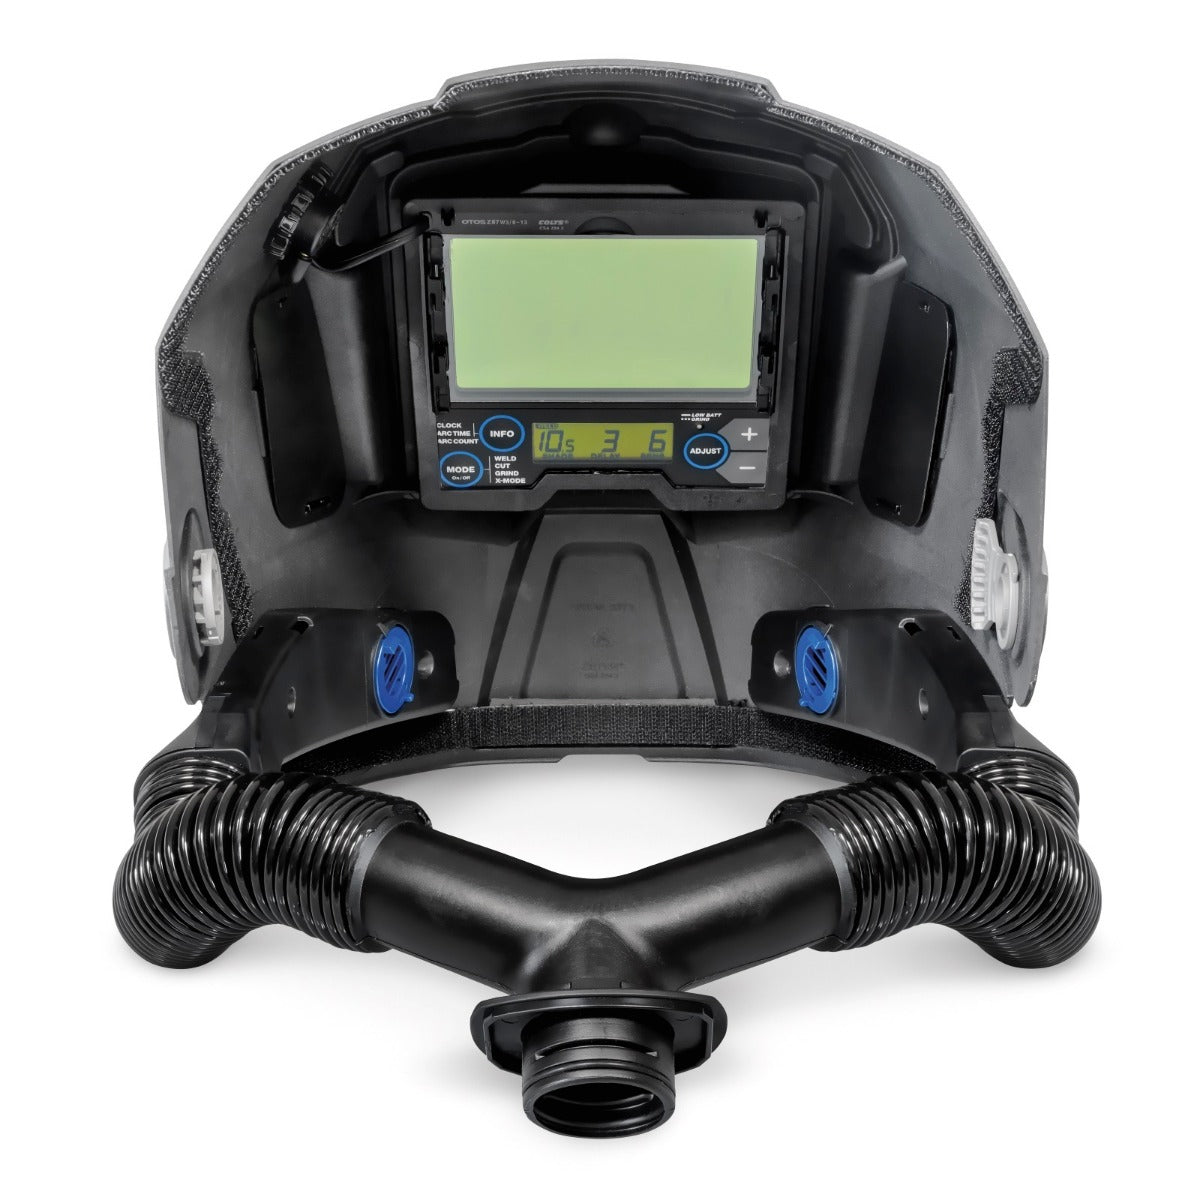 Miller PAPR System w/T94i-R Helmet (264575)